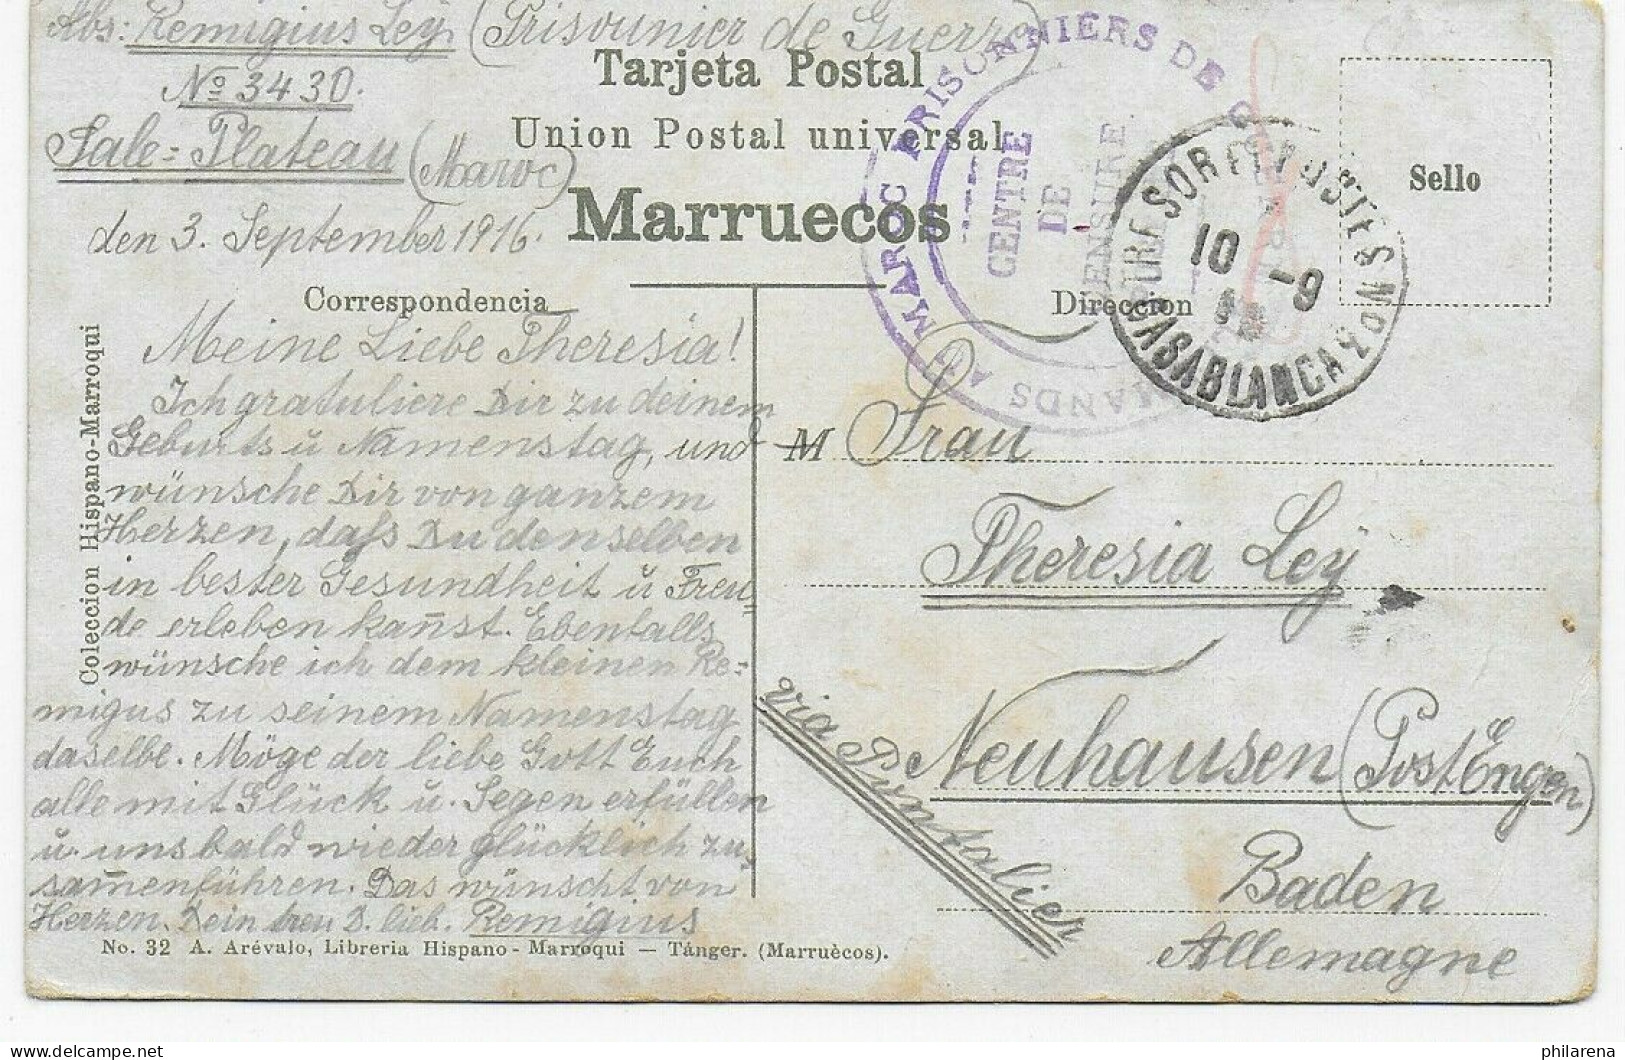 Ansichtskarte Tanger, Feldpost 1. WK Casablanca Nach Neuhausen/Baden 1916 - Feldpost (postage Free)